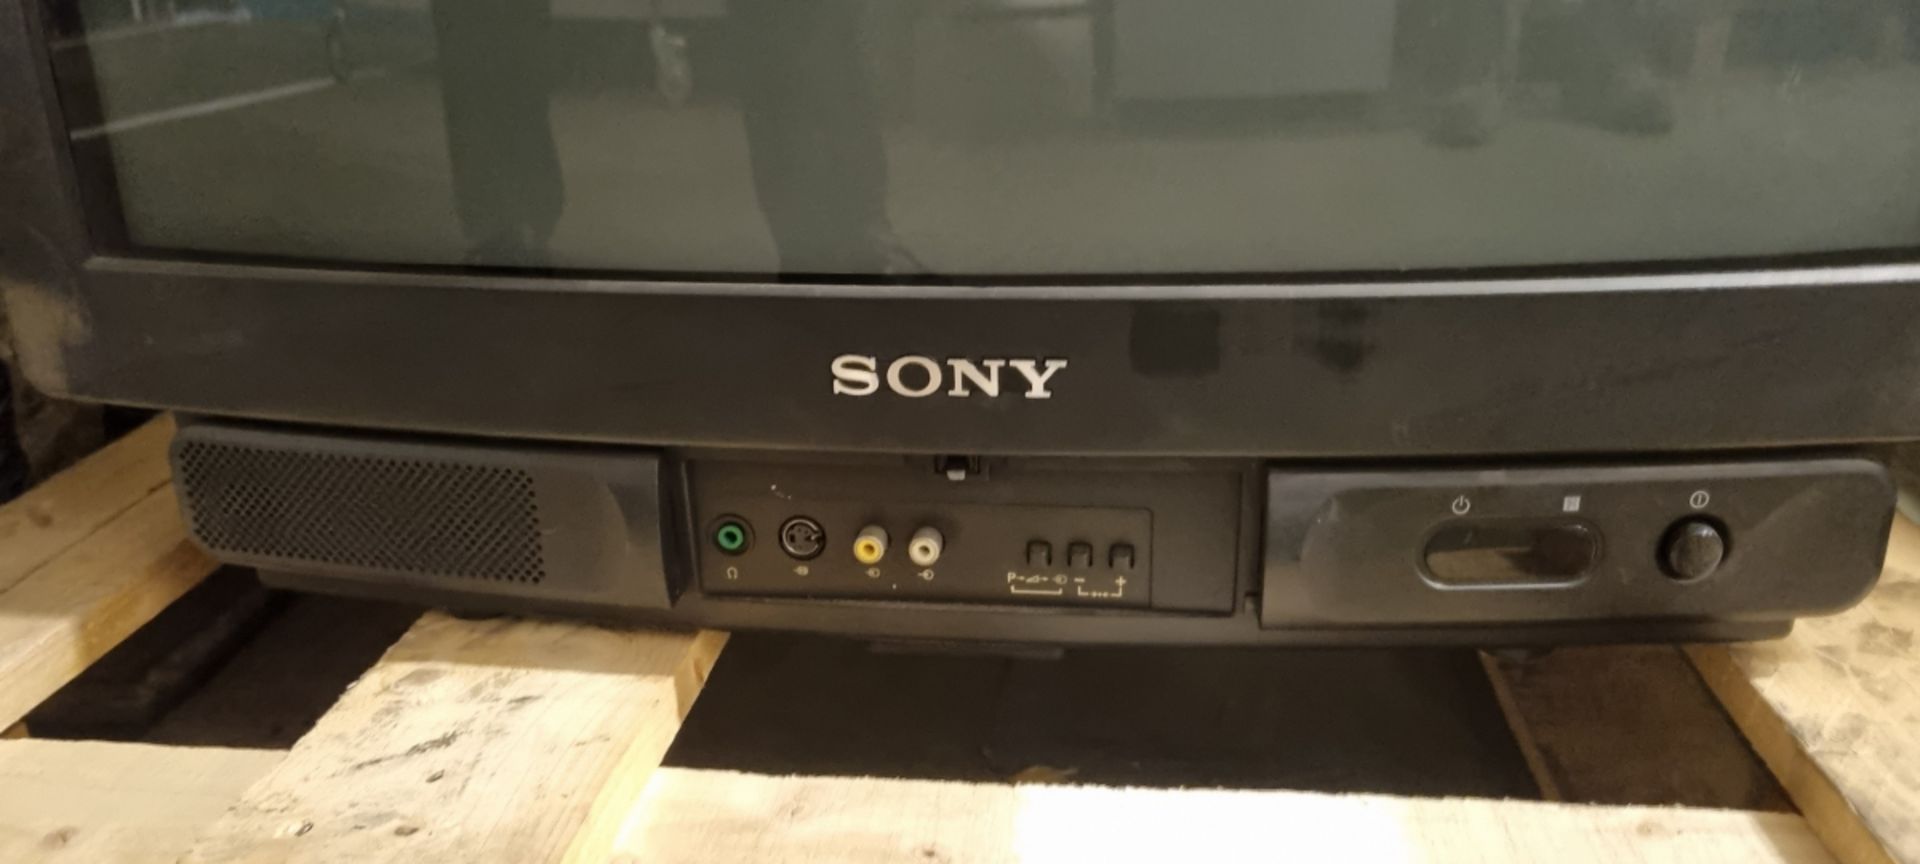 Sony KV-M2521U Trinitron 24 inch colour TV - 240V - Bild 2 aus 4